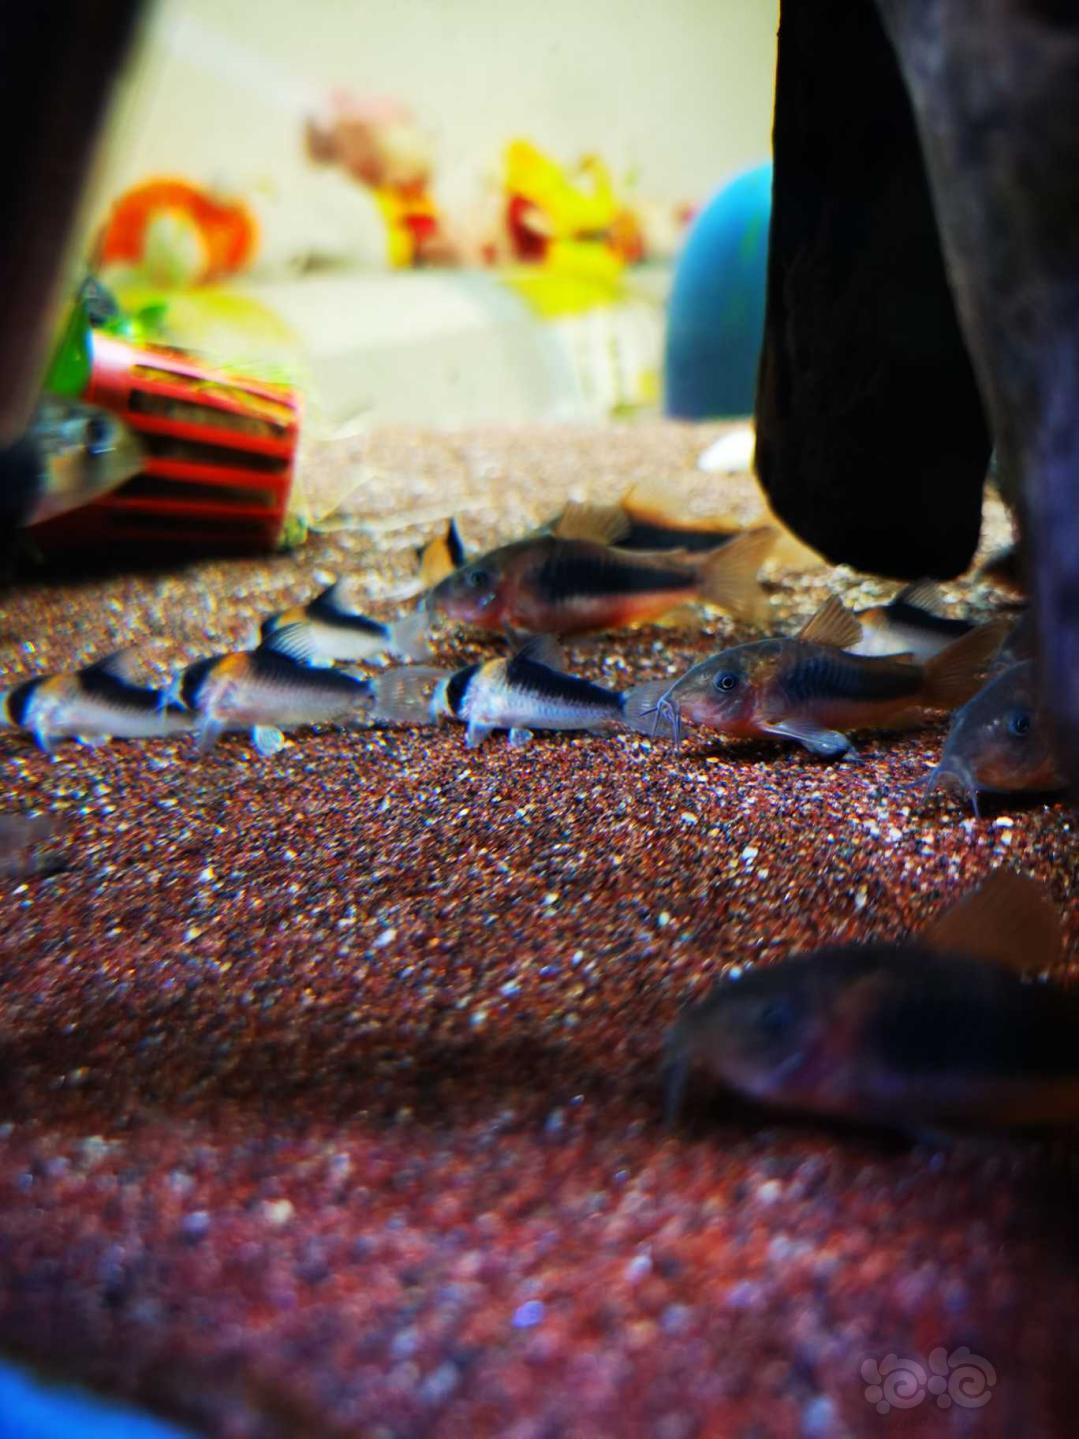 【鼠鱼】紫罗兰鼠鱼很漂亮-图2